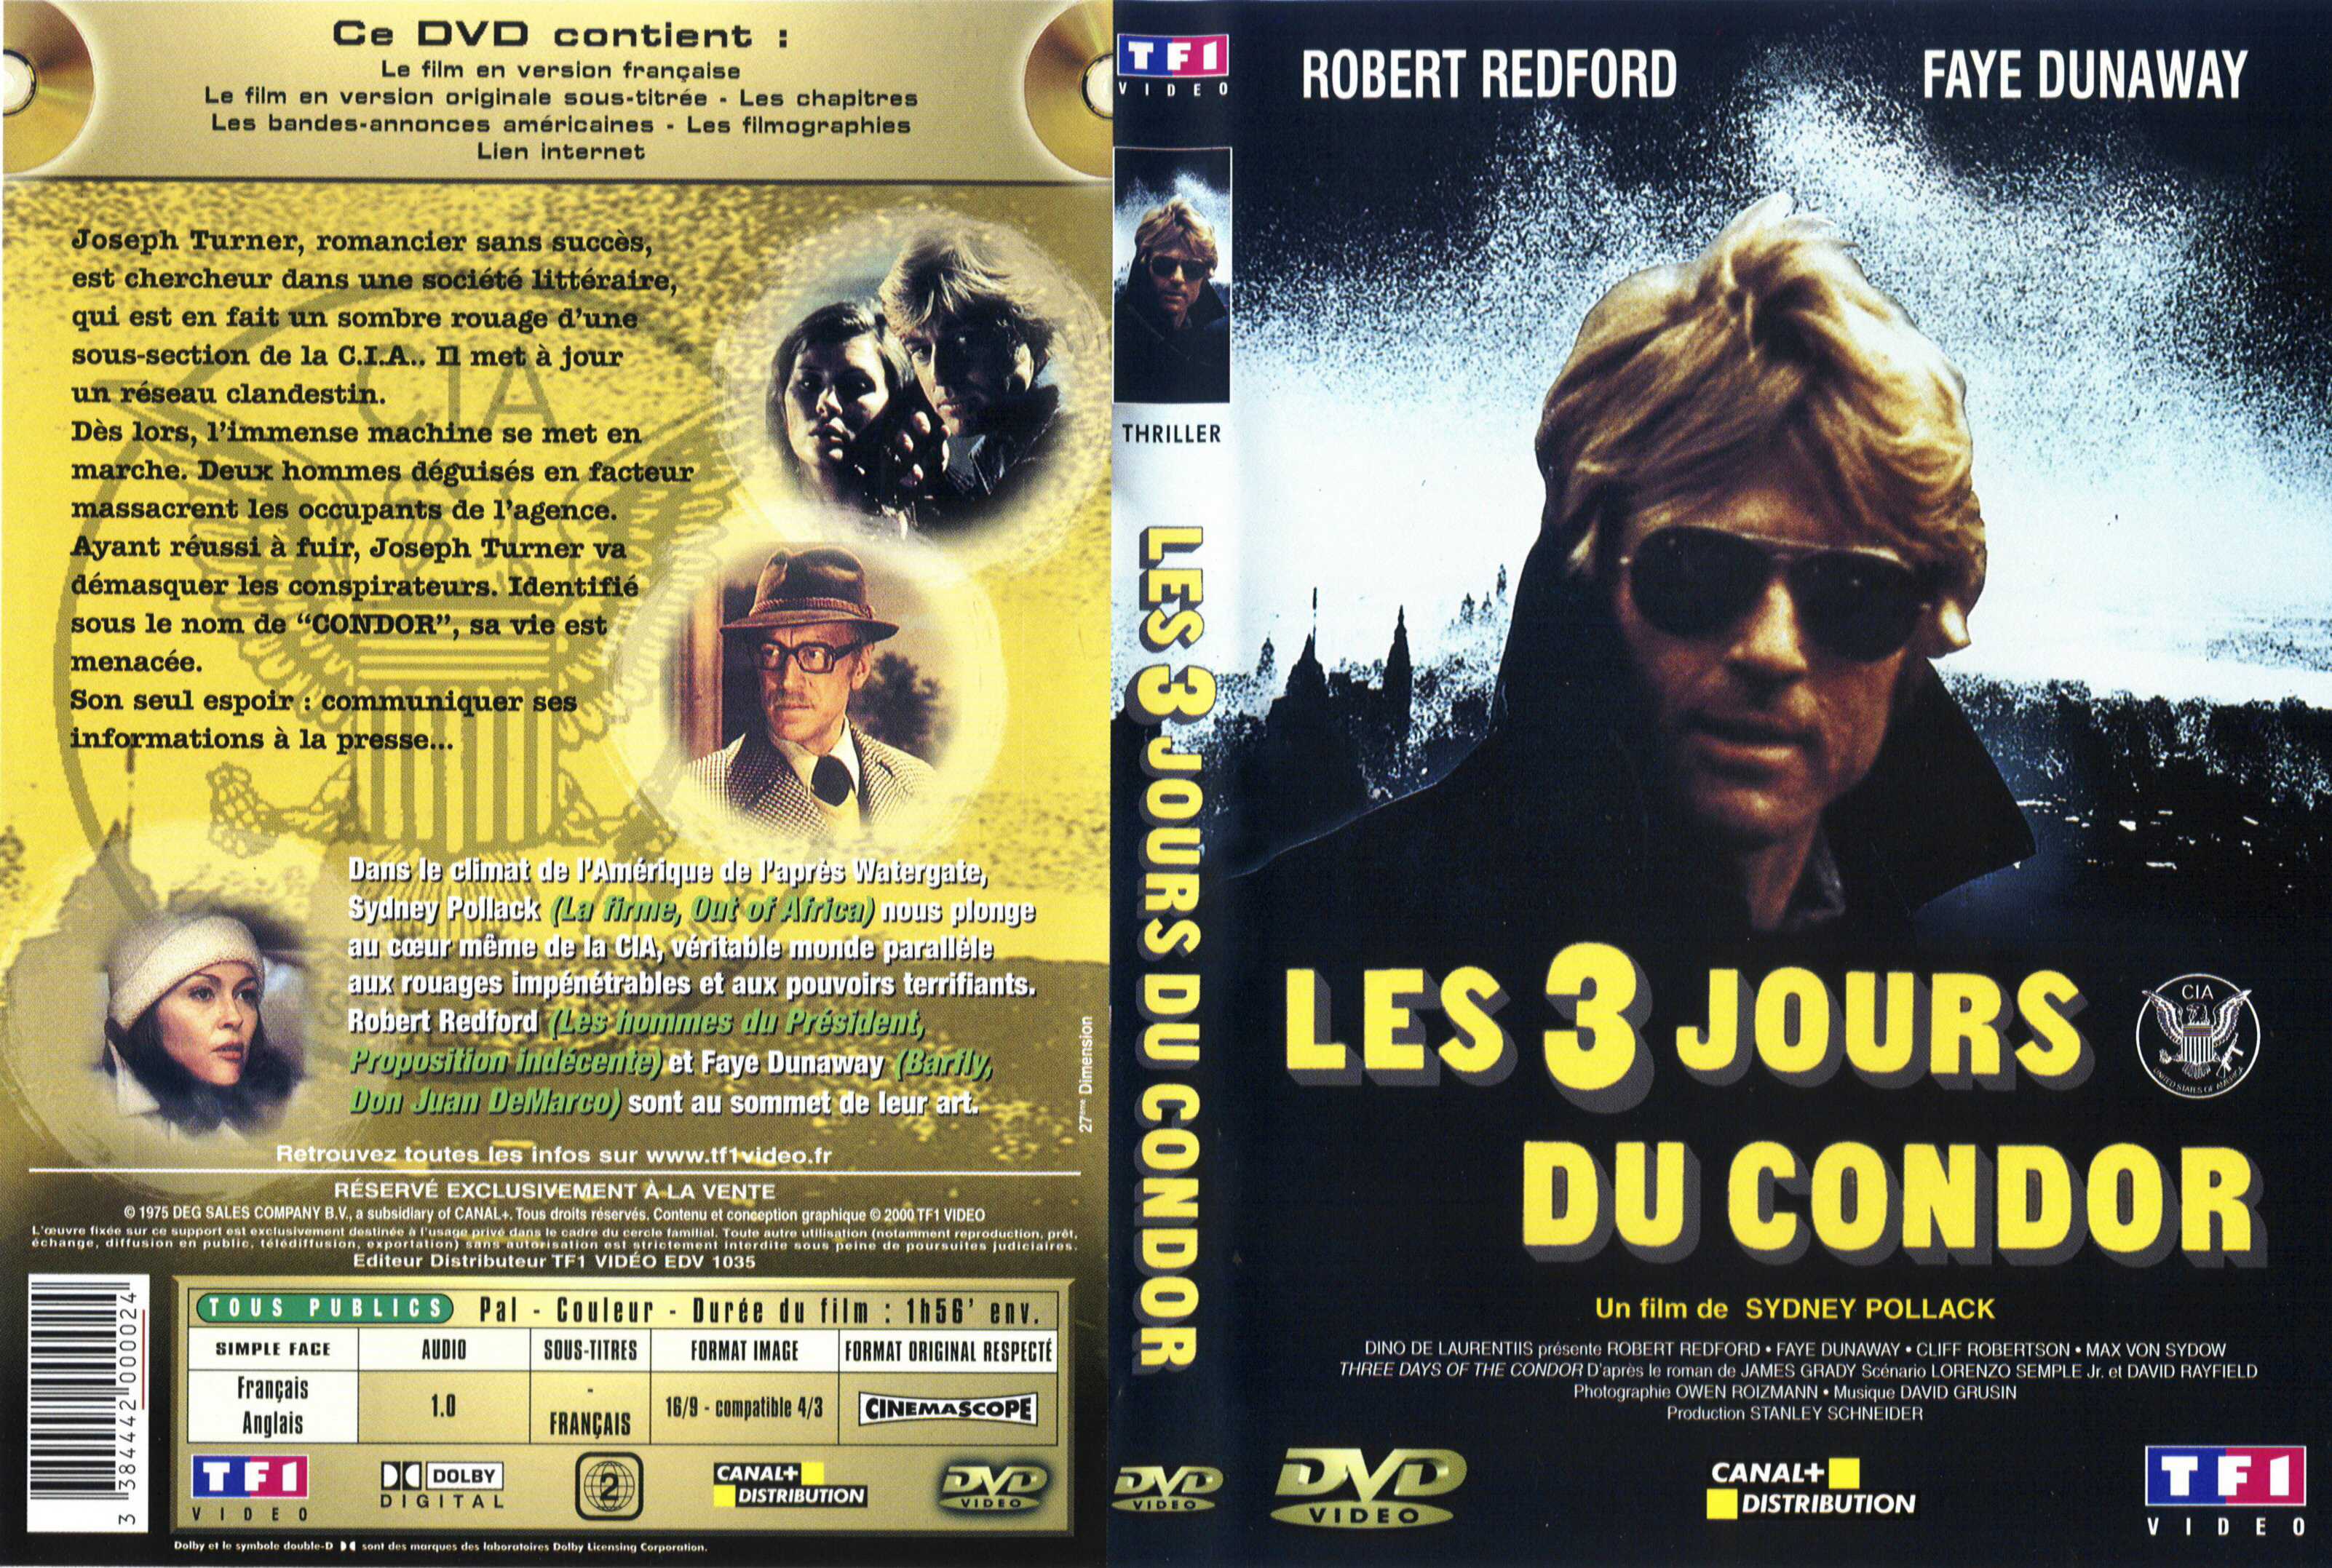 Jaquette DVD Les 3 jours du condor